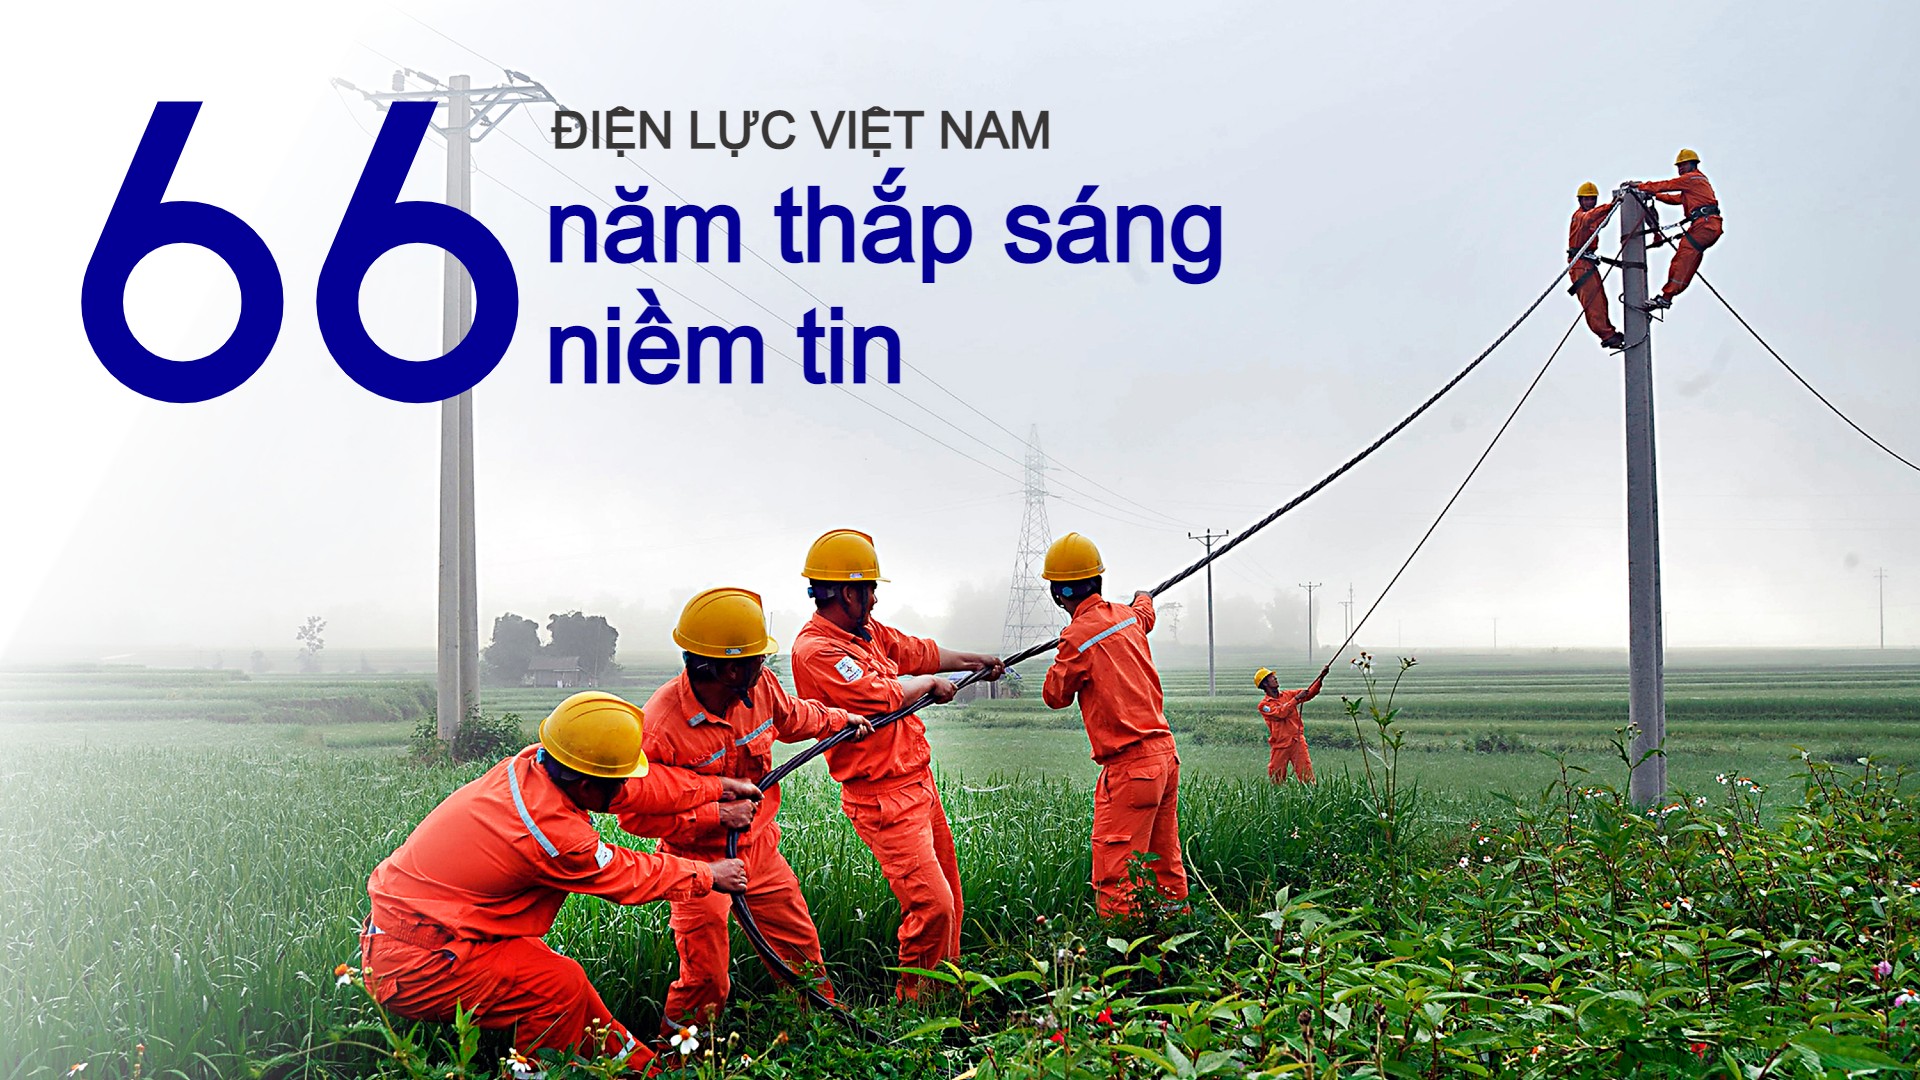 Điện lực Việt Nam - 66 năm thắp sáng niềm tin